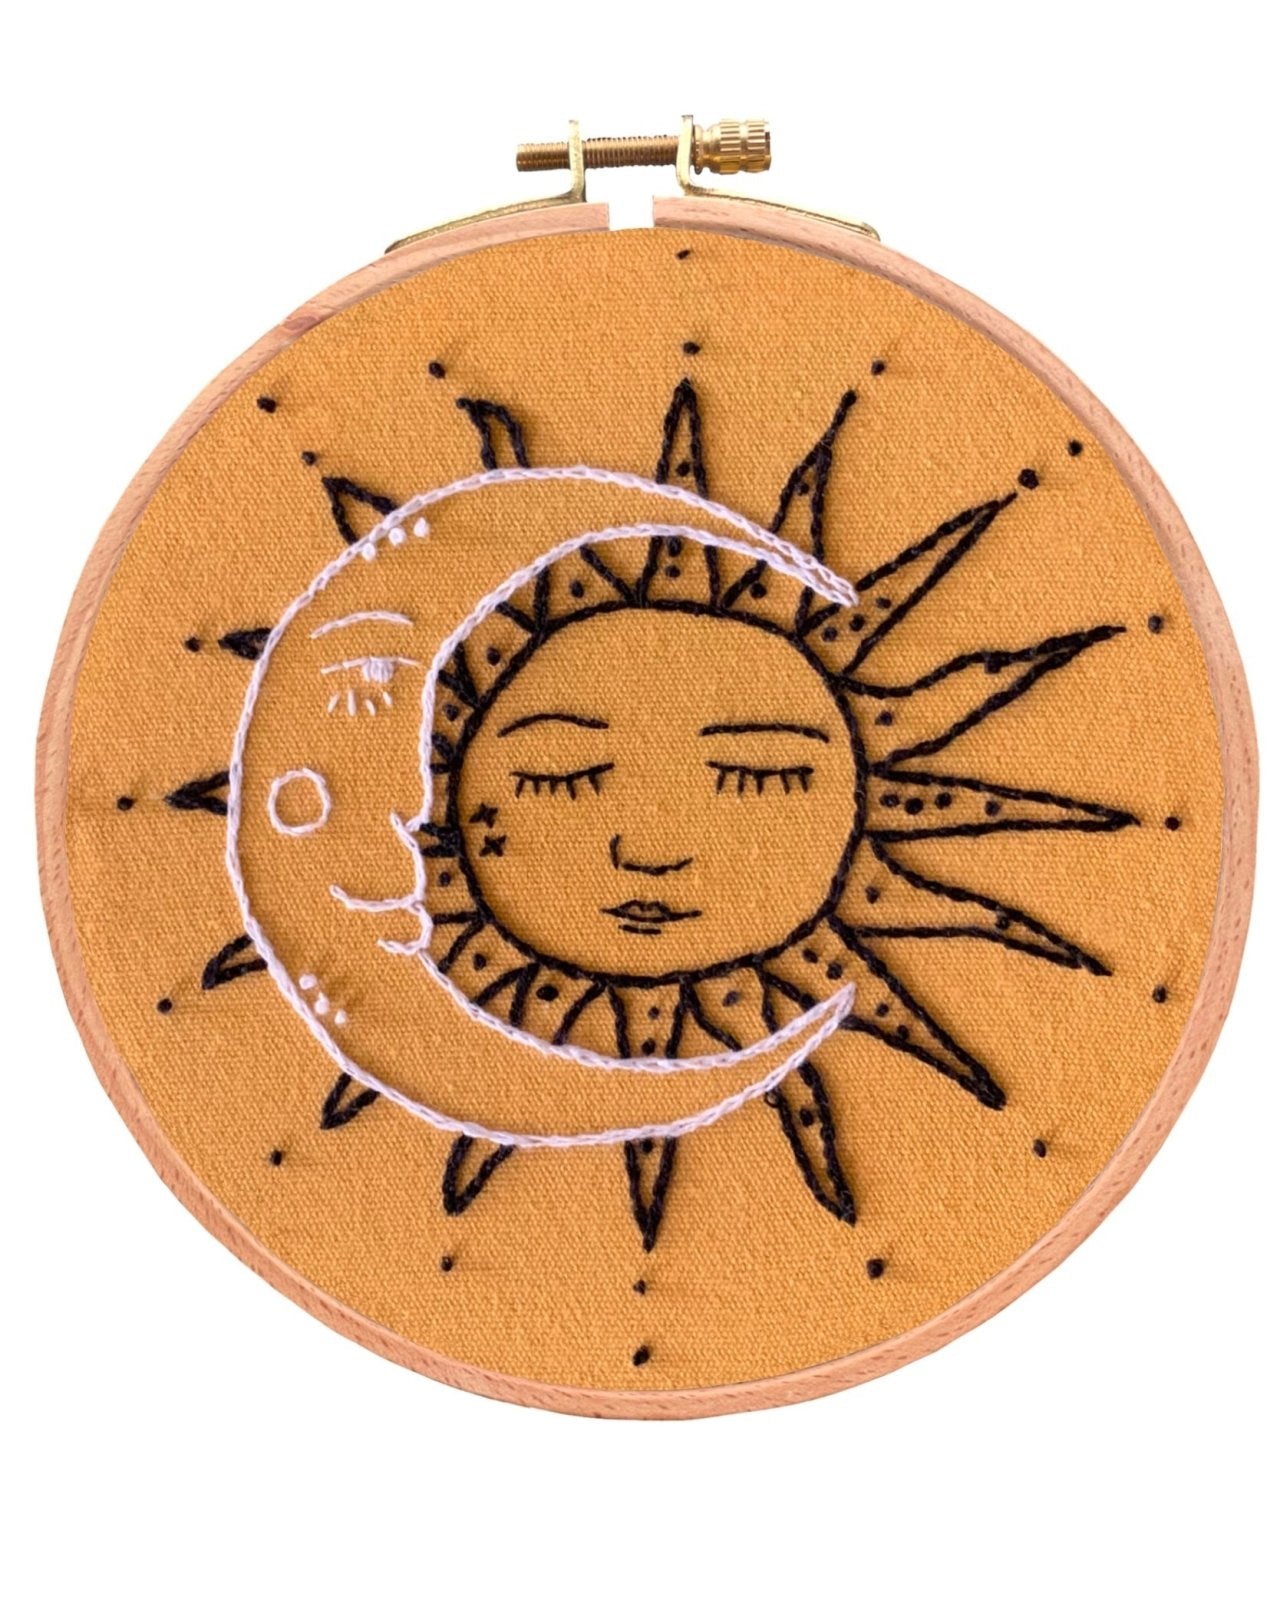 Khalohe Moon and Sun Embroidery Kit - Stitched Up Kits